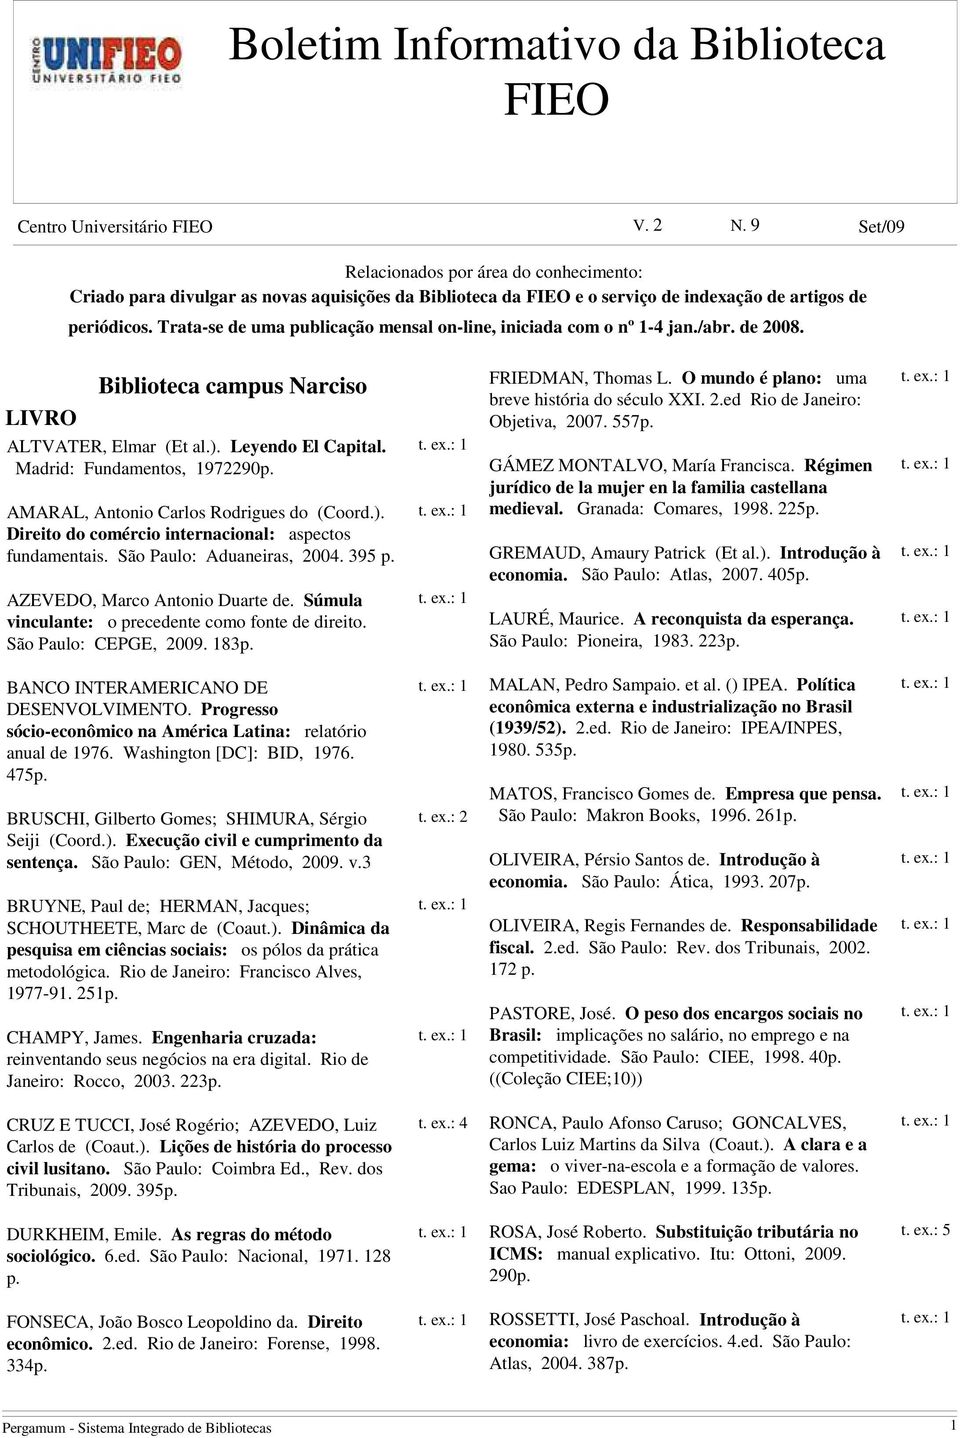 Trata-se de uma publicação mensal on-line, iniciada com o nº 1-4 jan./abr. de 2008. LIVRO Biblioteca campus Narciso ALTVATER, Elmar (Et al.). Leyendo El Capital. Madrid: Fundamentos, 1972.290p.